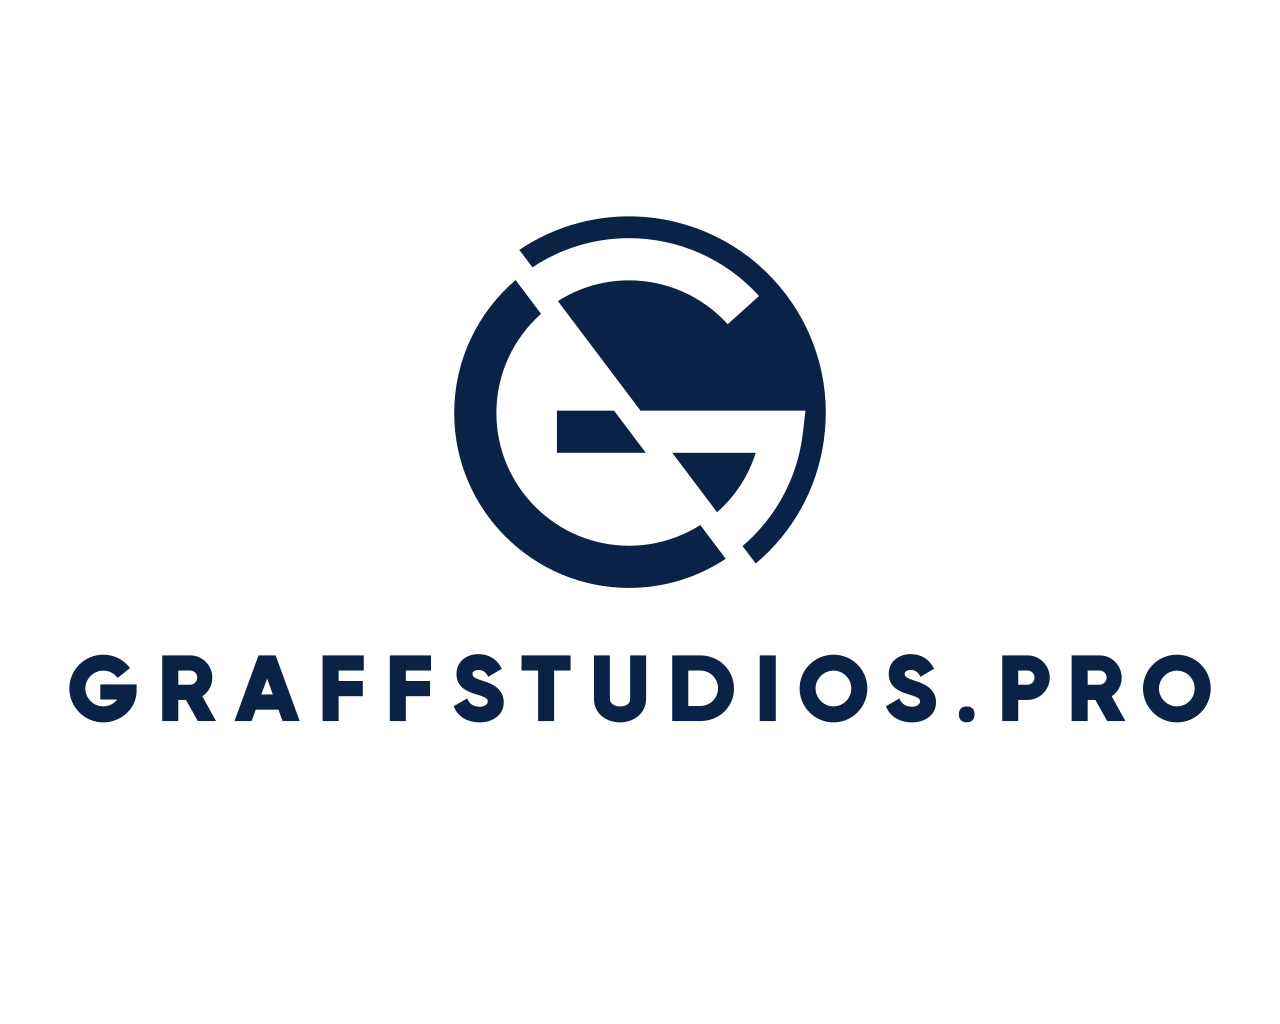 GraffStudios.Pro